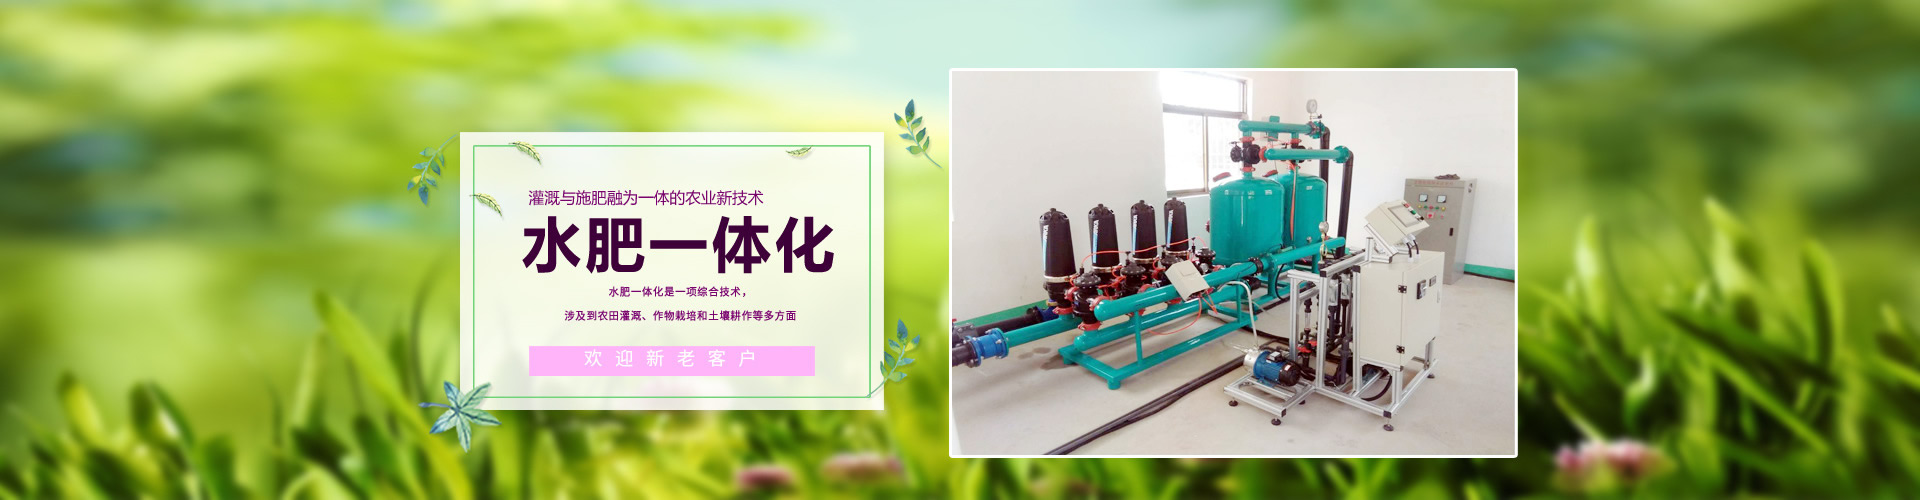 山东乐禾节水灌溉科技有限公司